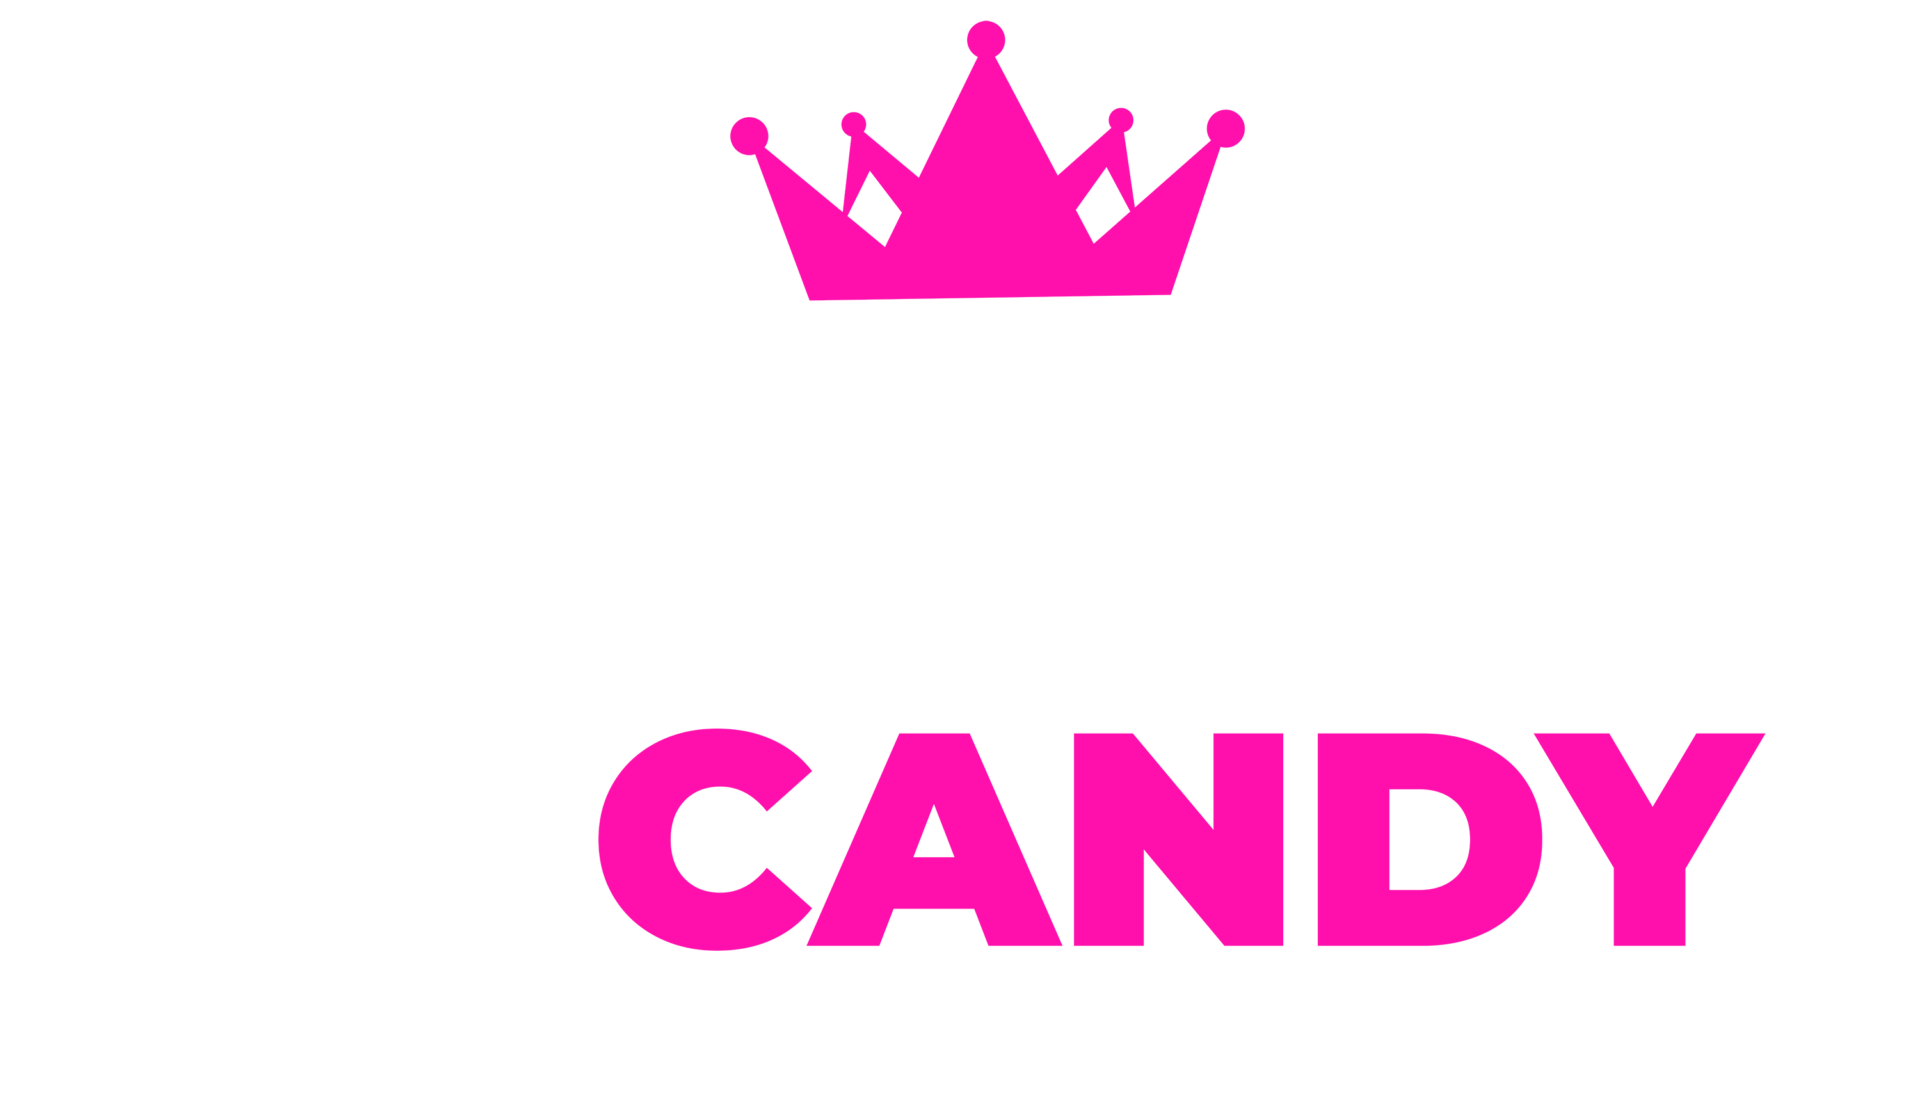 Hard Core Candy